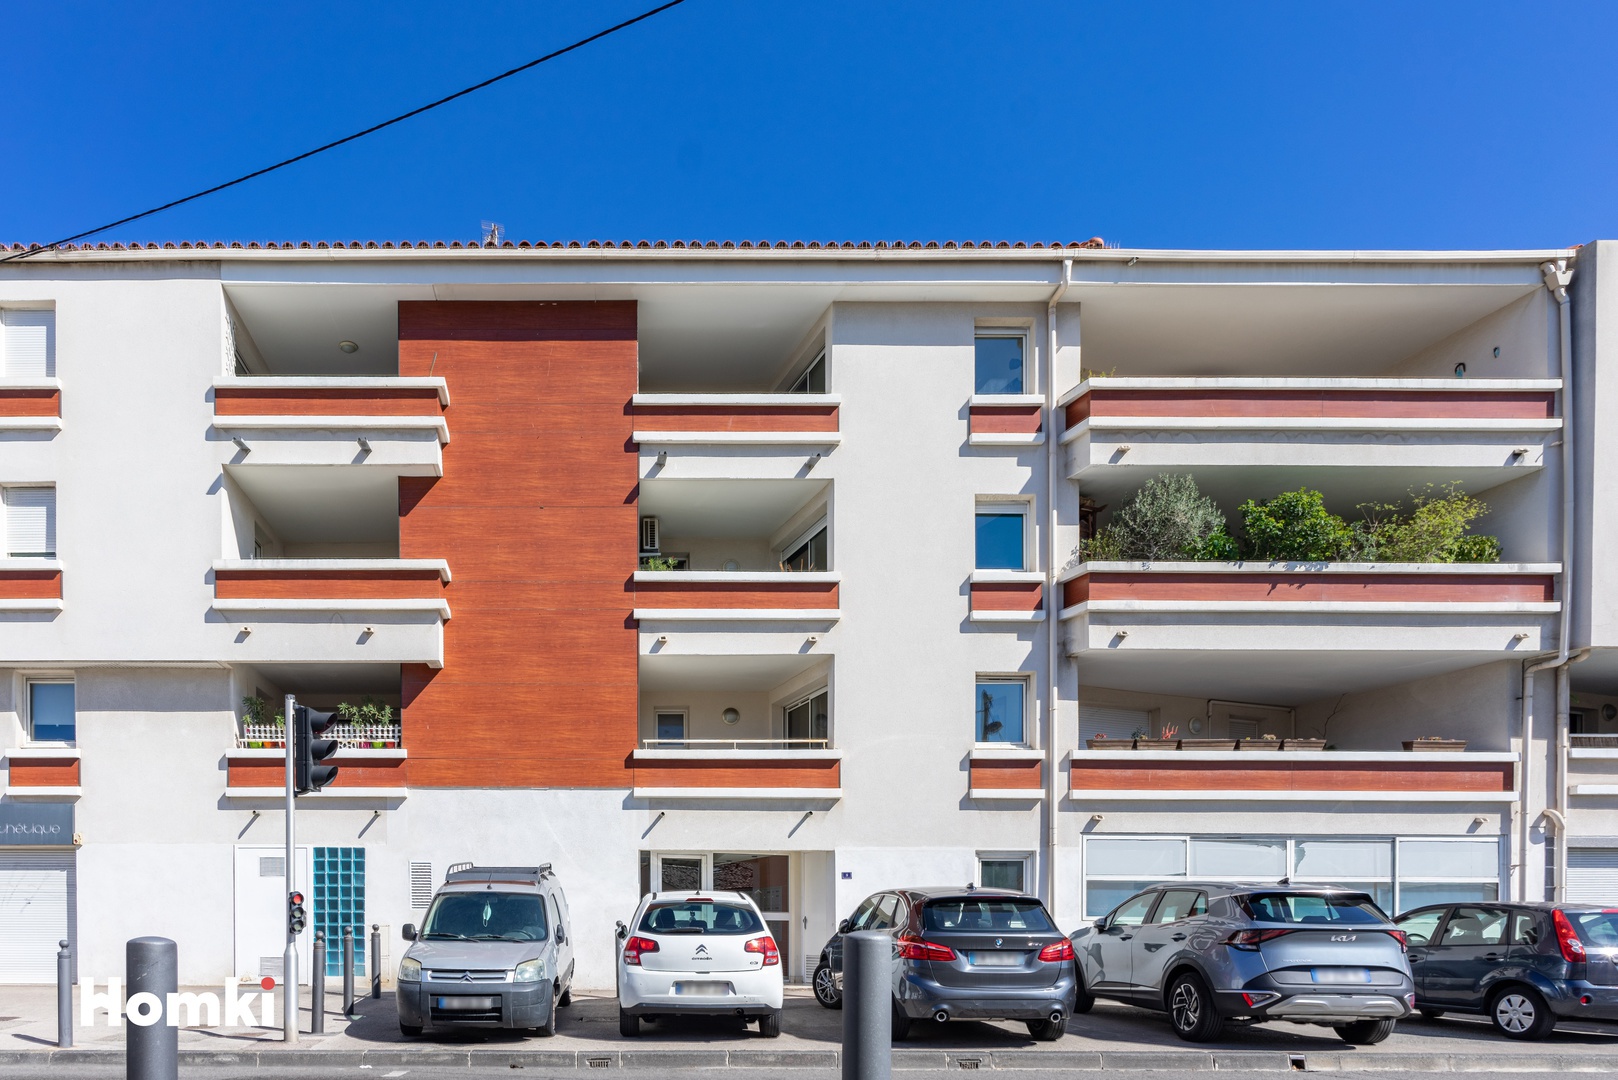 Homki - Vente Appartement  de 30.0 m² à Marseille 13008